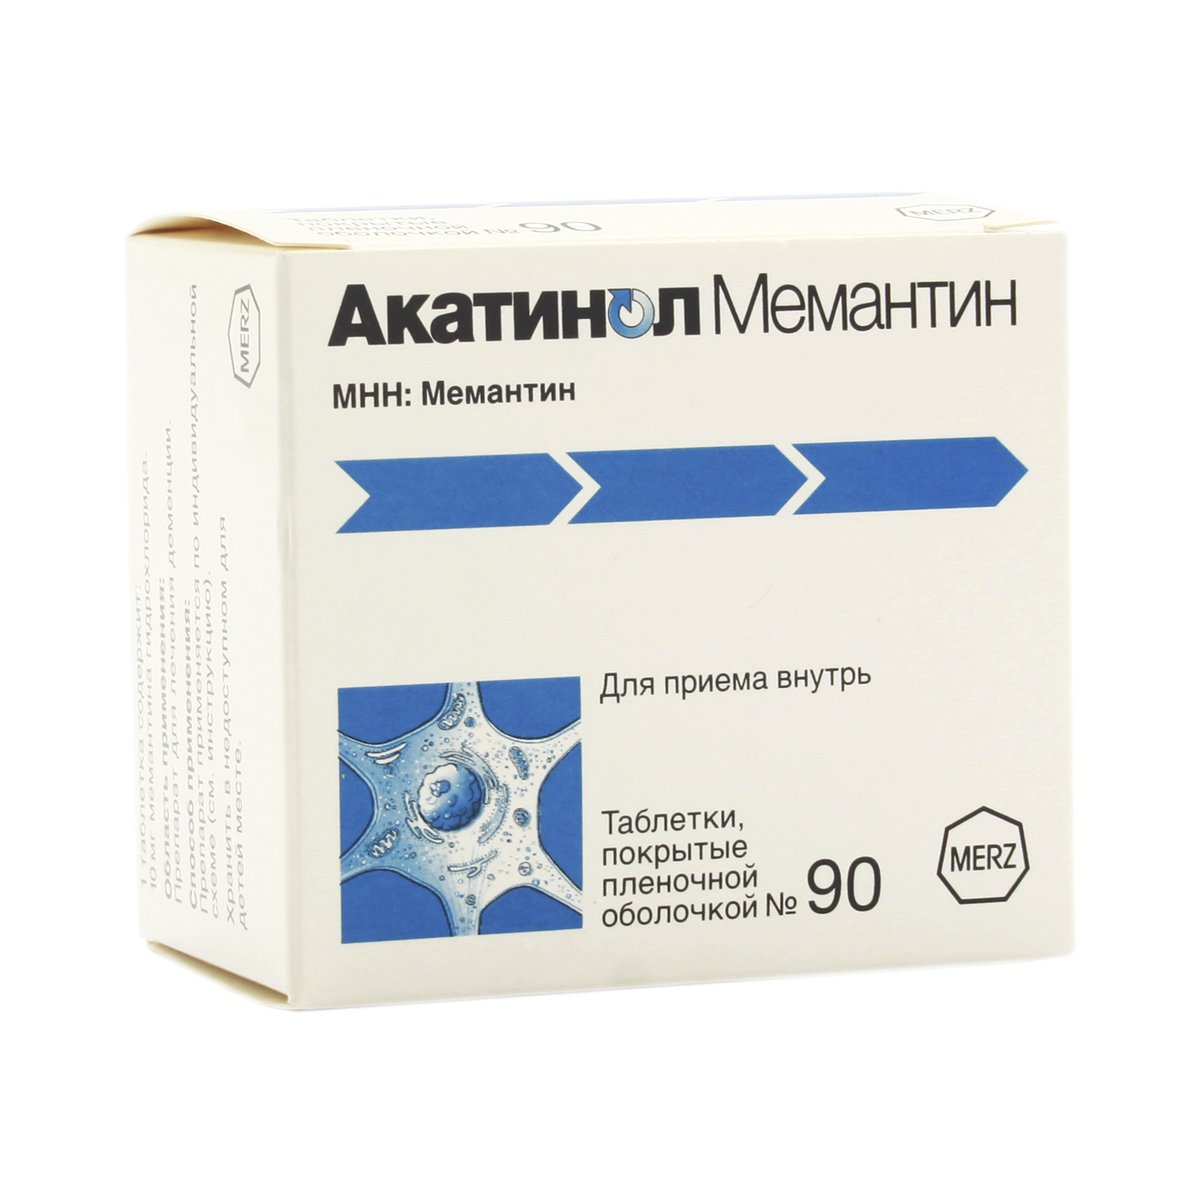 Акатинол мемантин (таблетки, 90 шт, 10 мг, для приема внутрь) - цена .